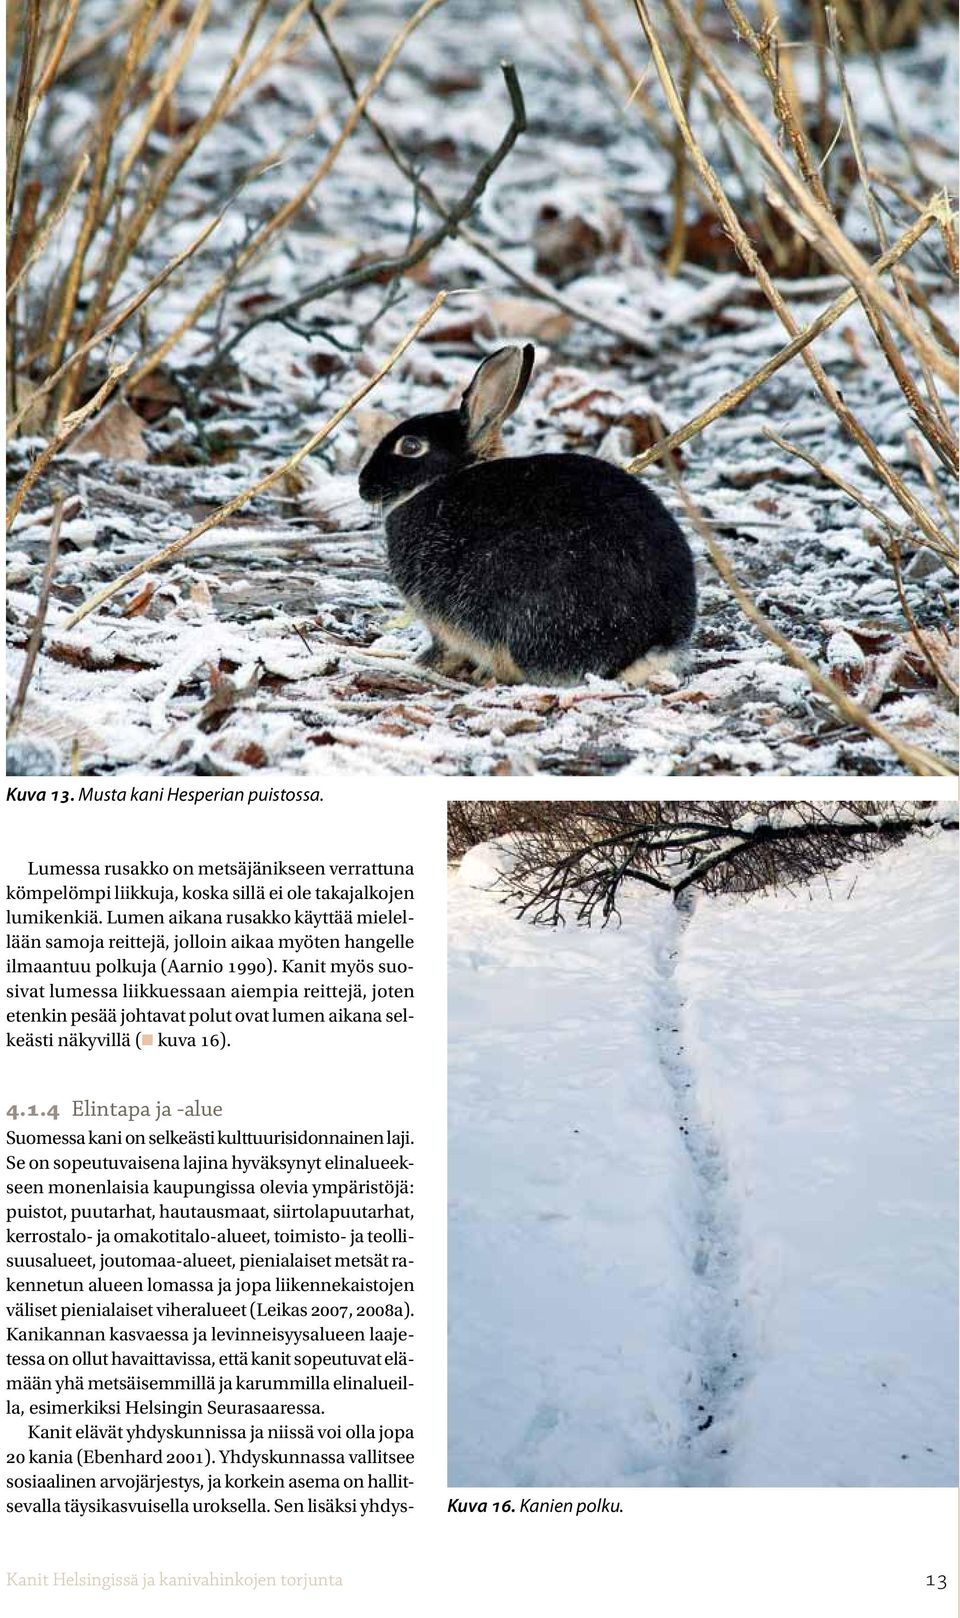 Kanit myös suosivat lumessa liikkuessaan aiempia reittejä, joten etenkin pesää johtavat polut ovat lumen aikana selkeästi näkyvillä (n kuva 16